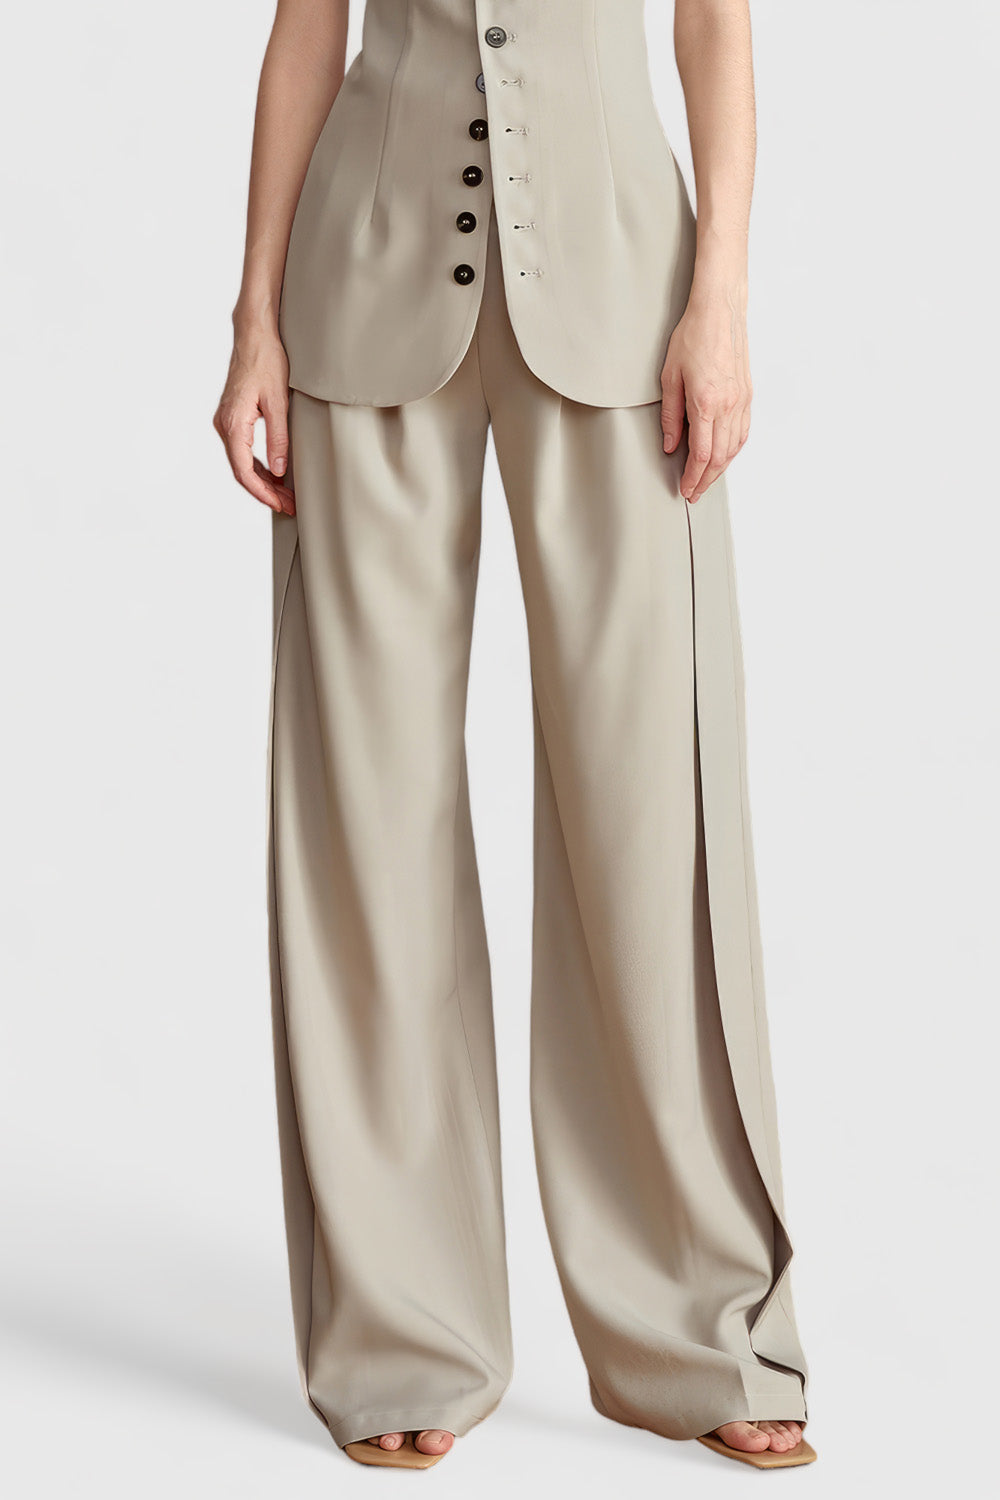 High Waisted Elegant Trousers - Beige